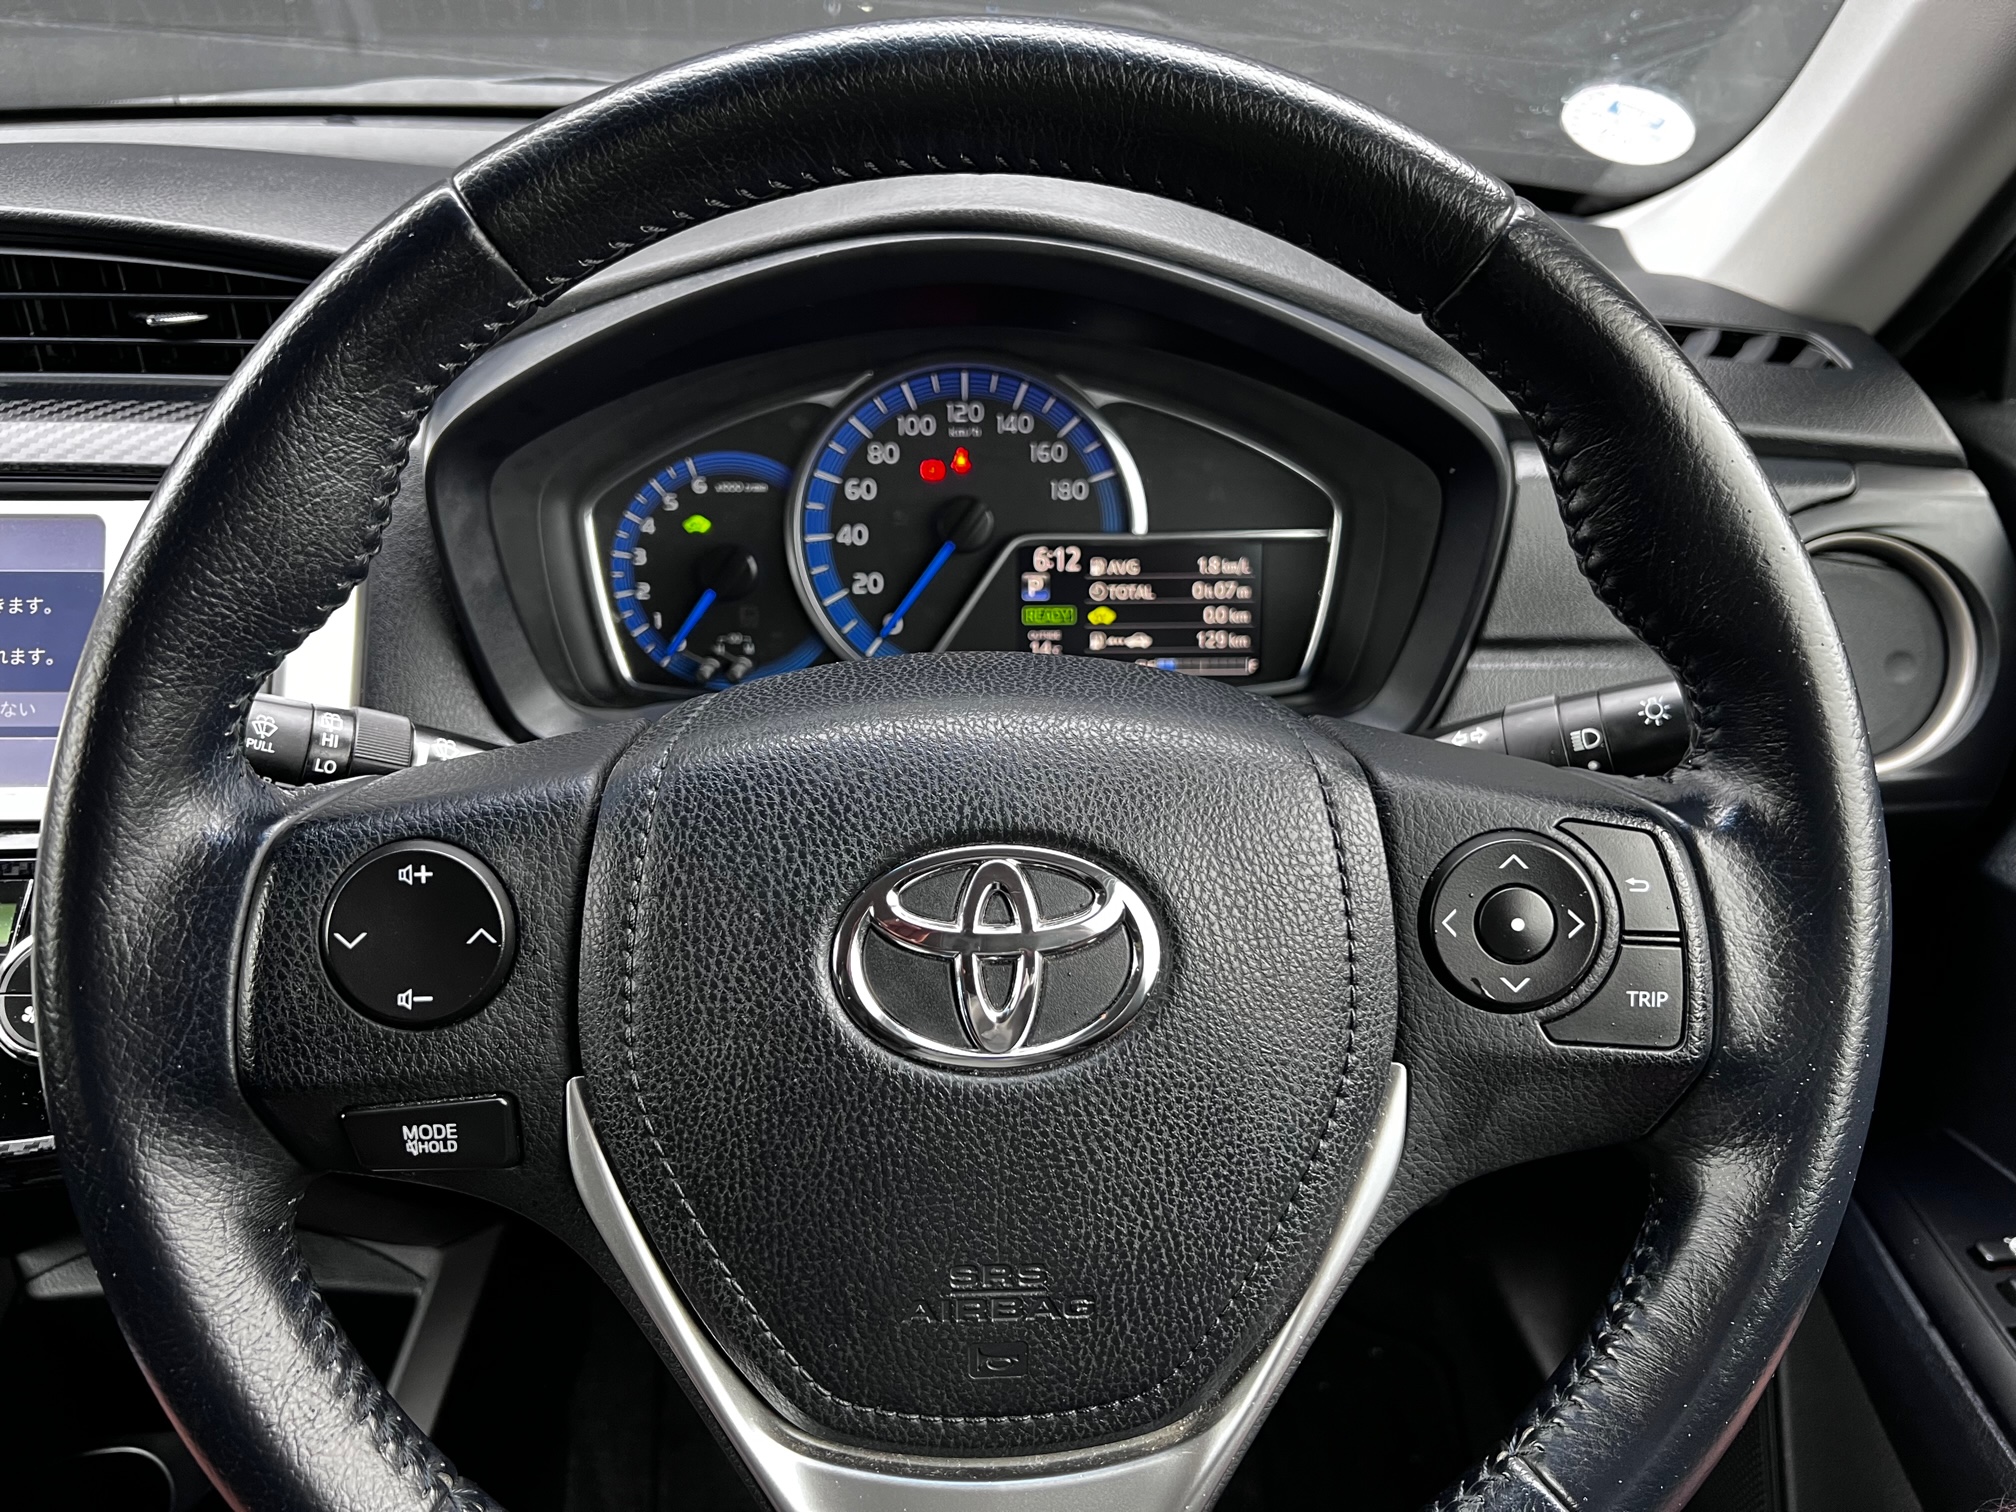 Toyota Fielder 2014 Image 16